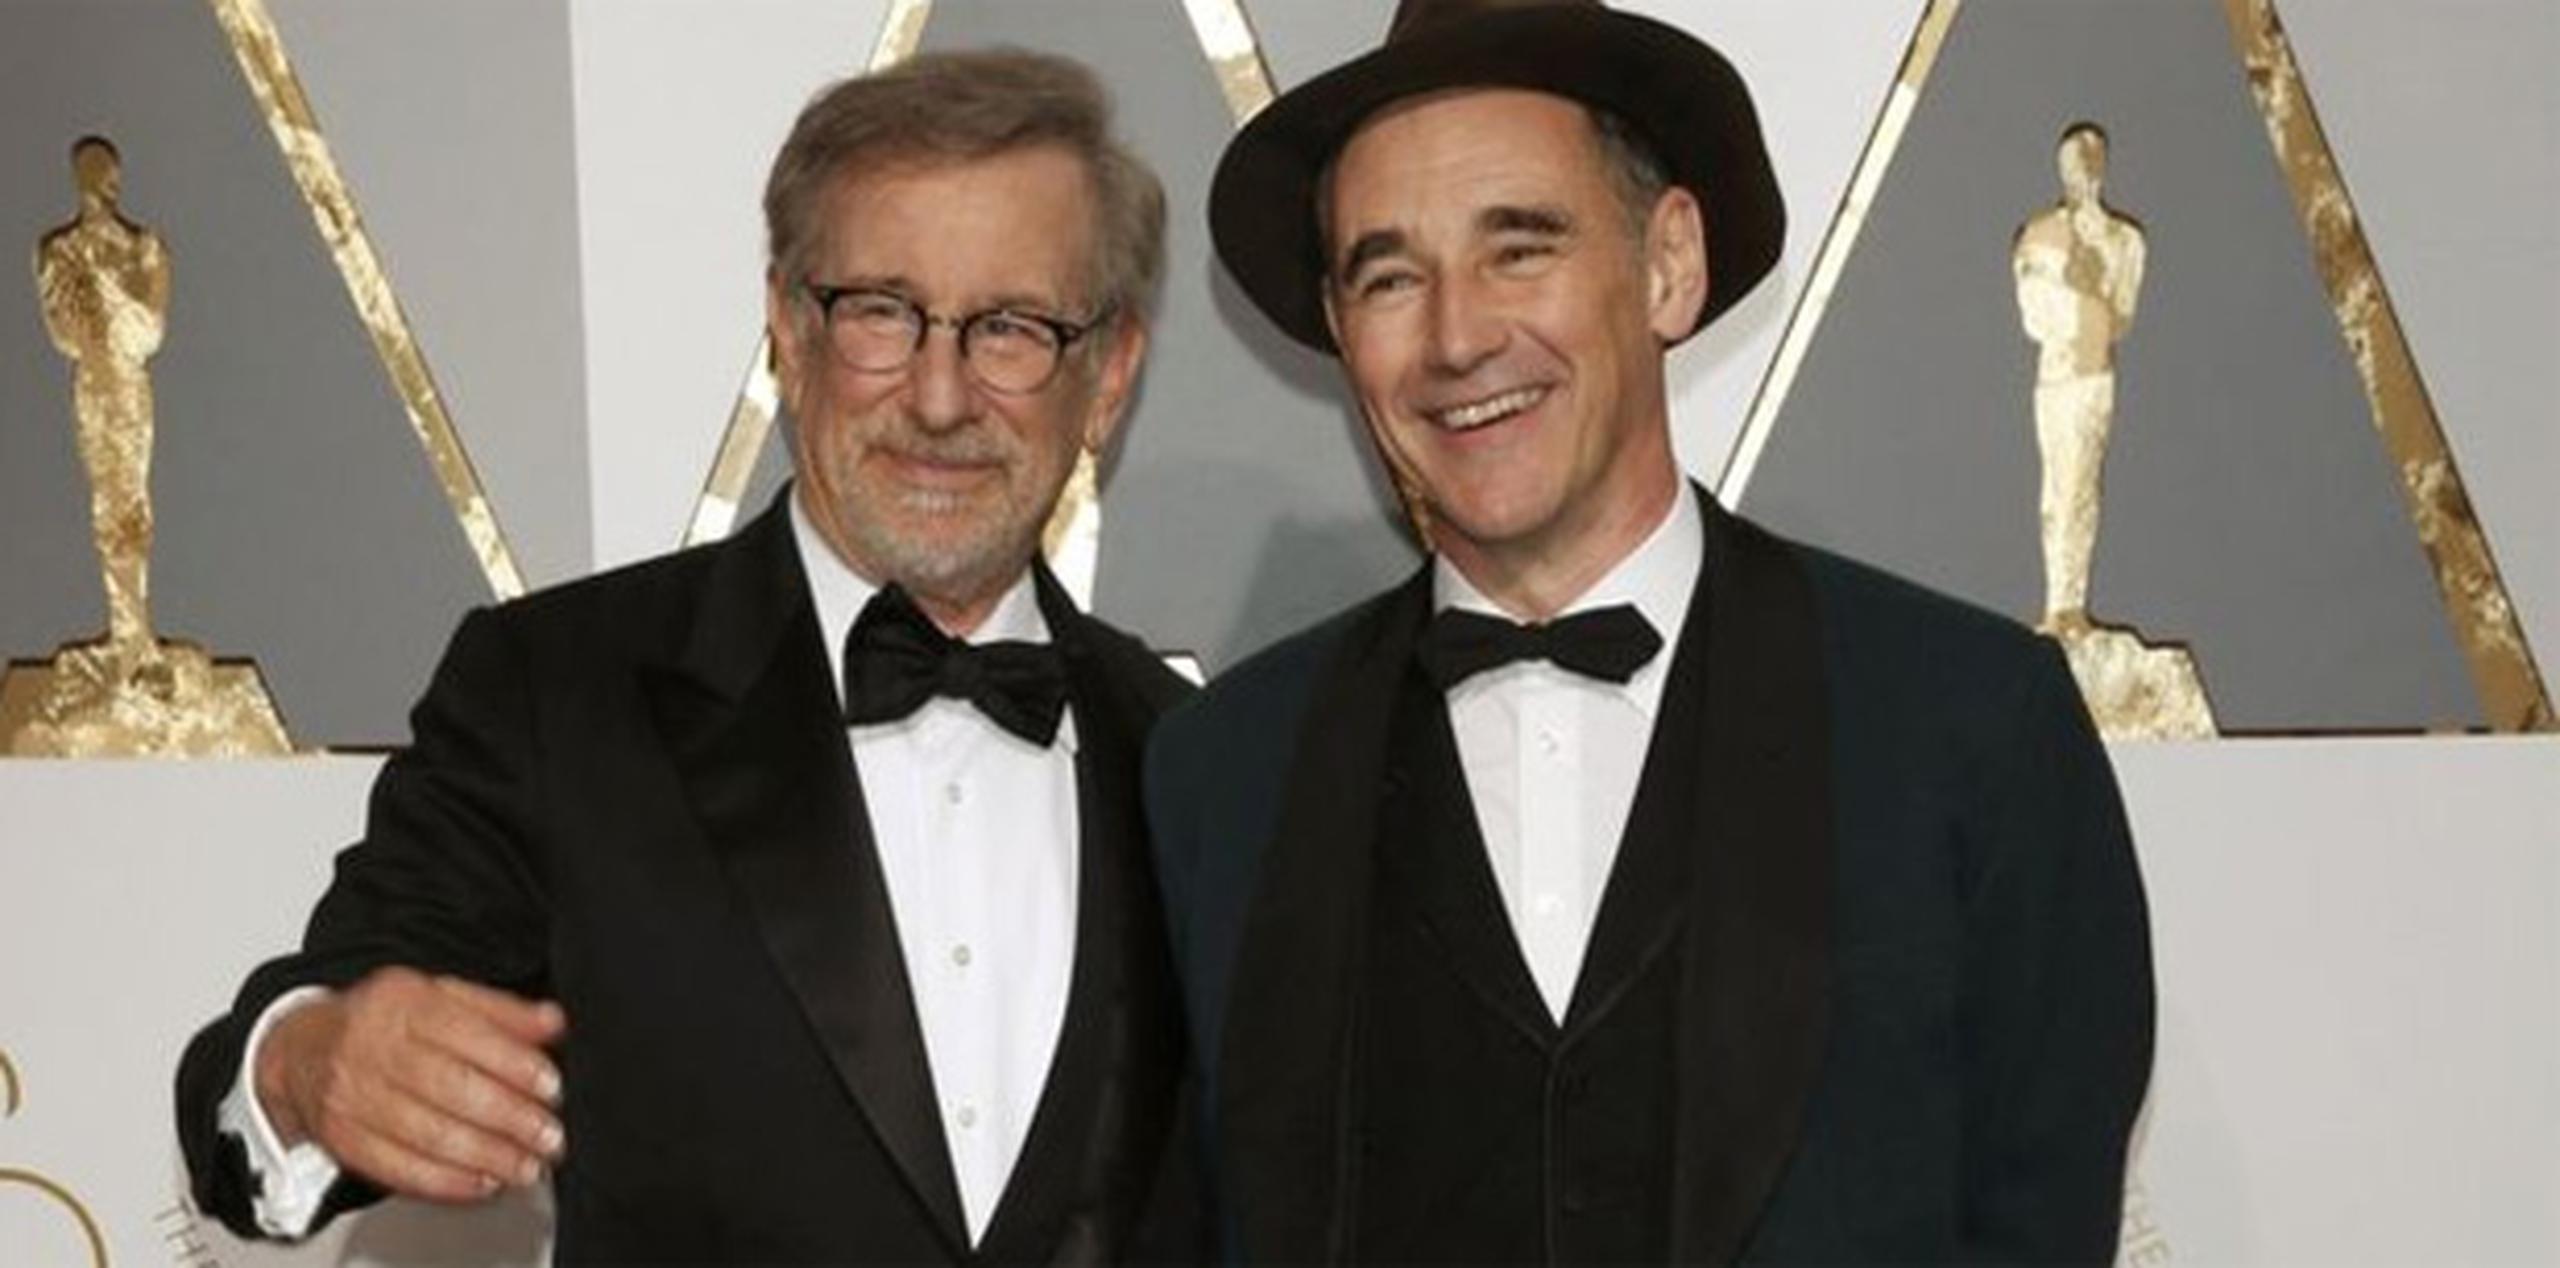 "The Kidnapping Of Edgardo Mortara" sería la tercera colaboración entre Spielberg y Rylance, luego de trabajar juntos en "Bridge of Spies" y "The BFG".